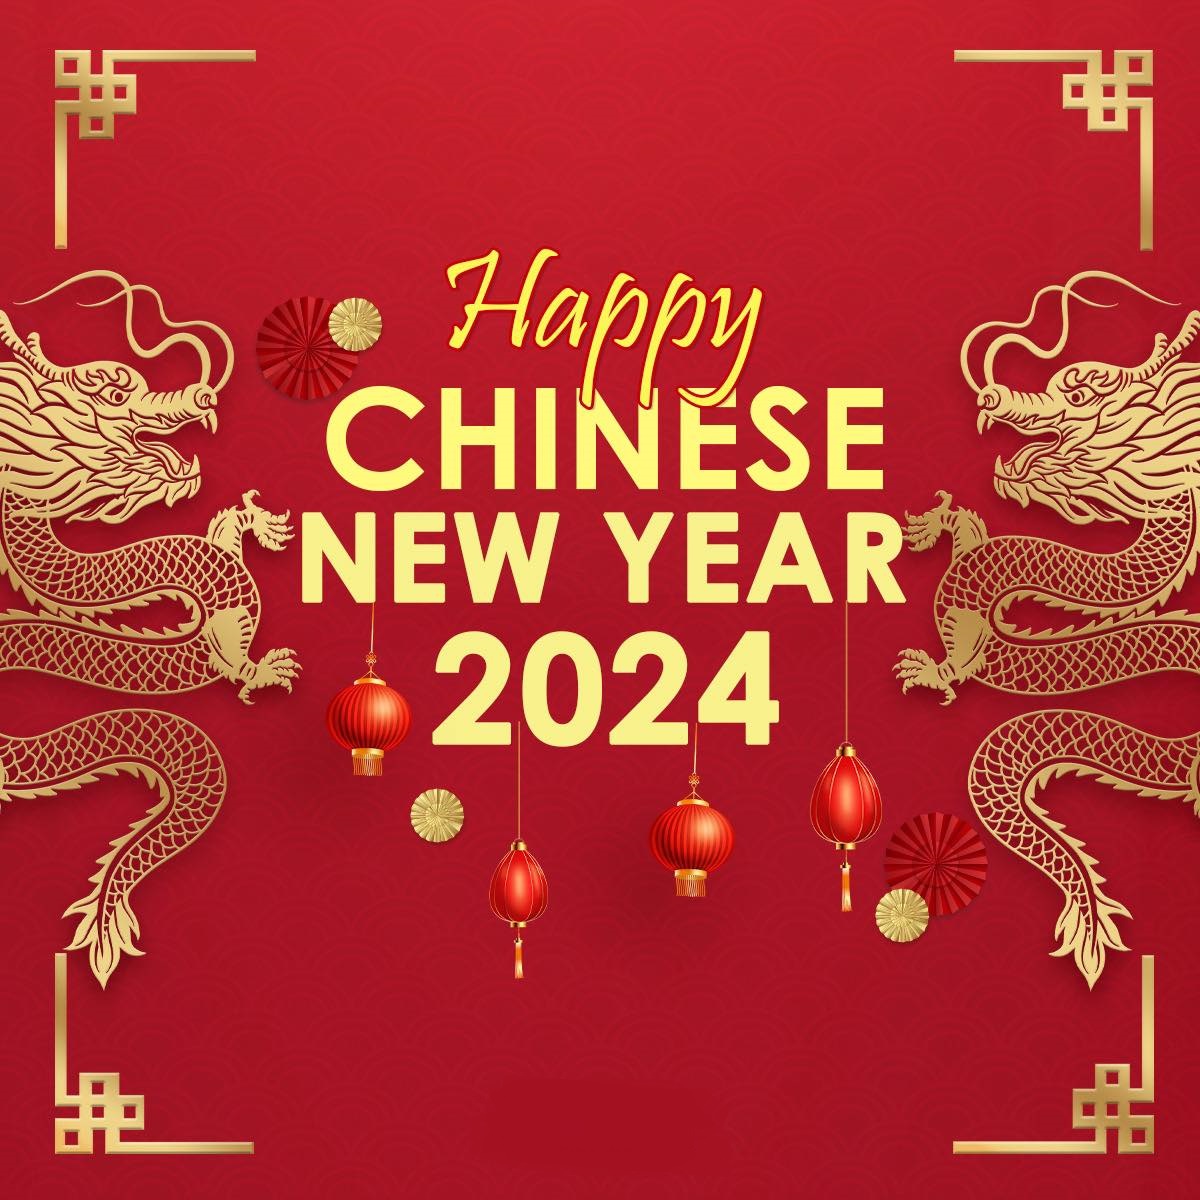 Happy Chinese New Year 2024 Pattaya Mail